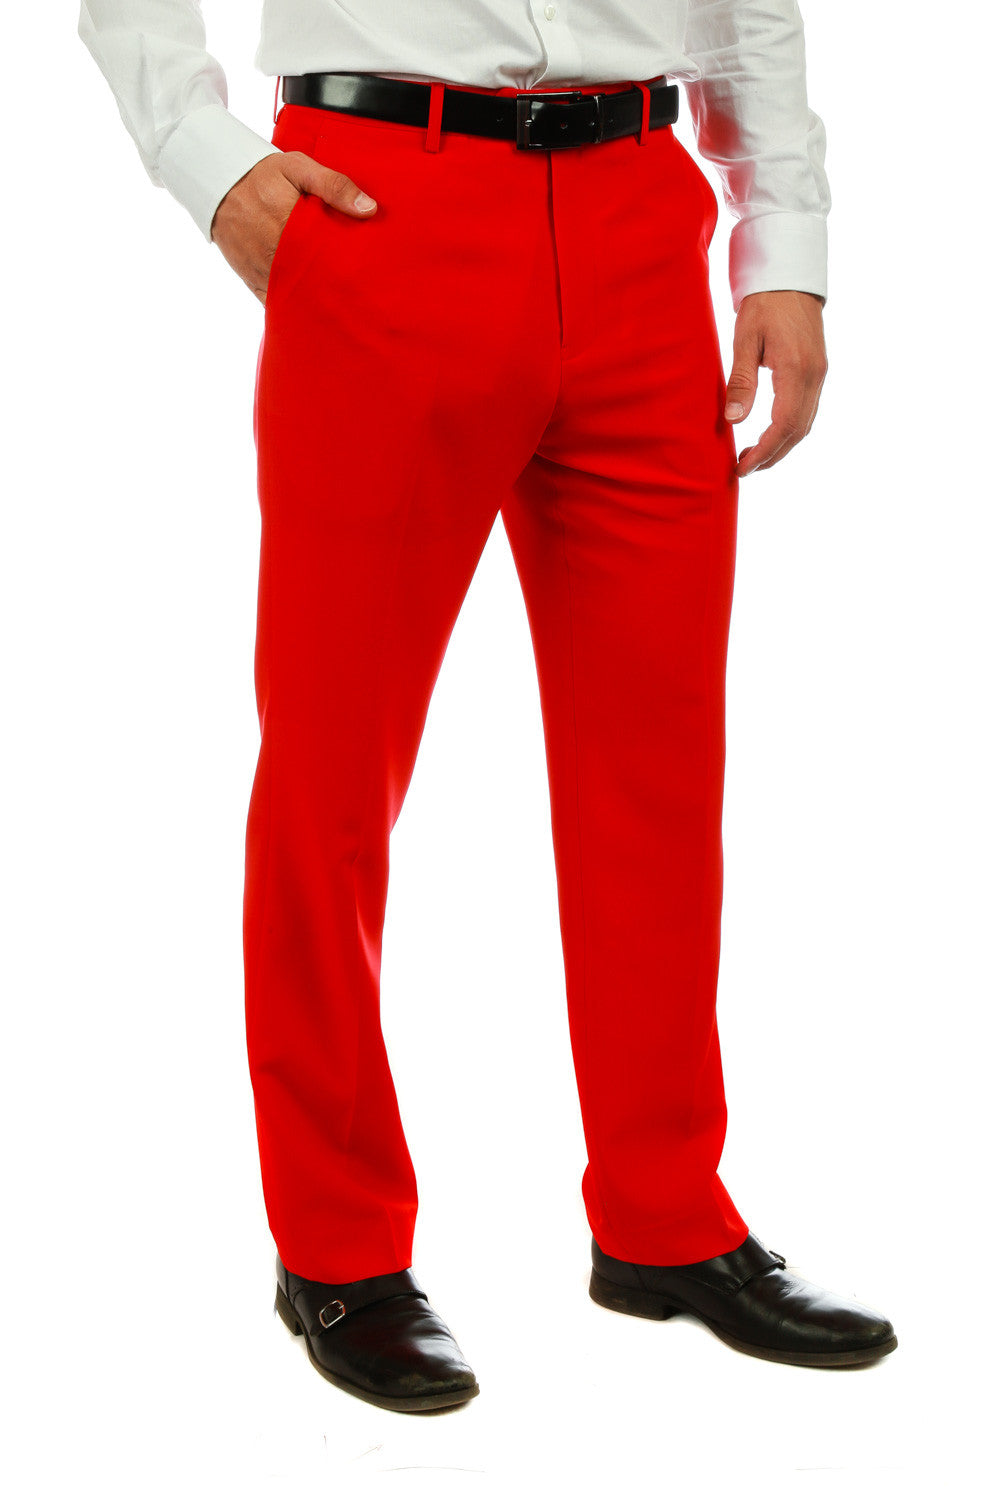 Men's Red Pants